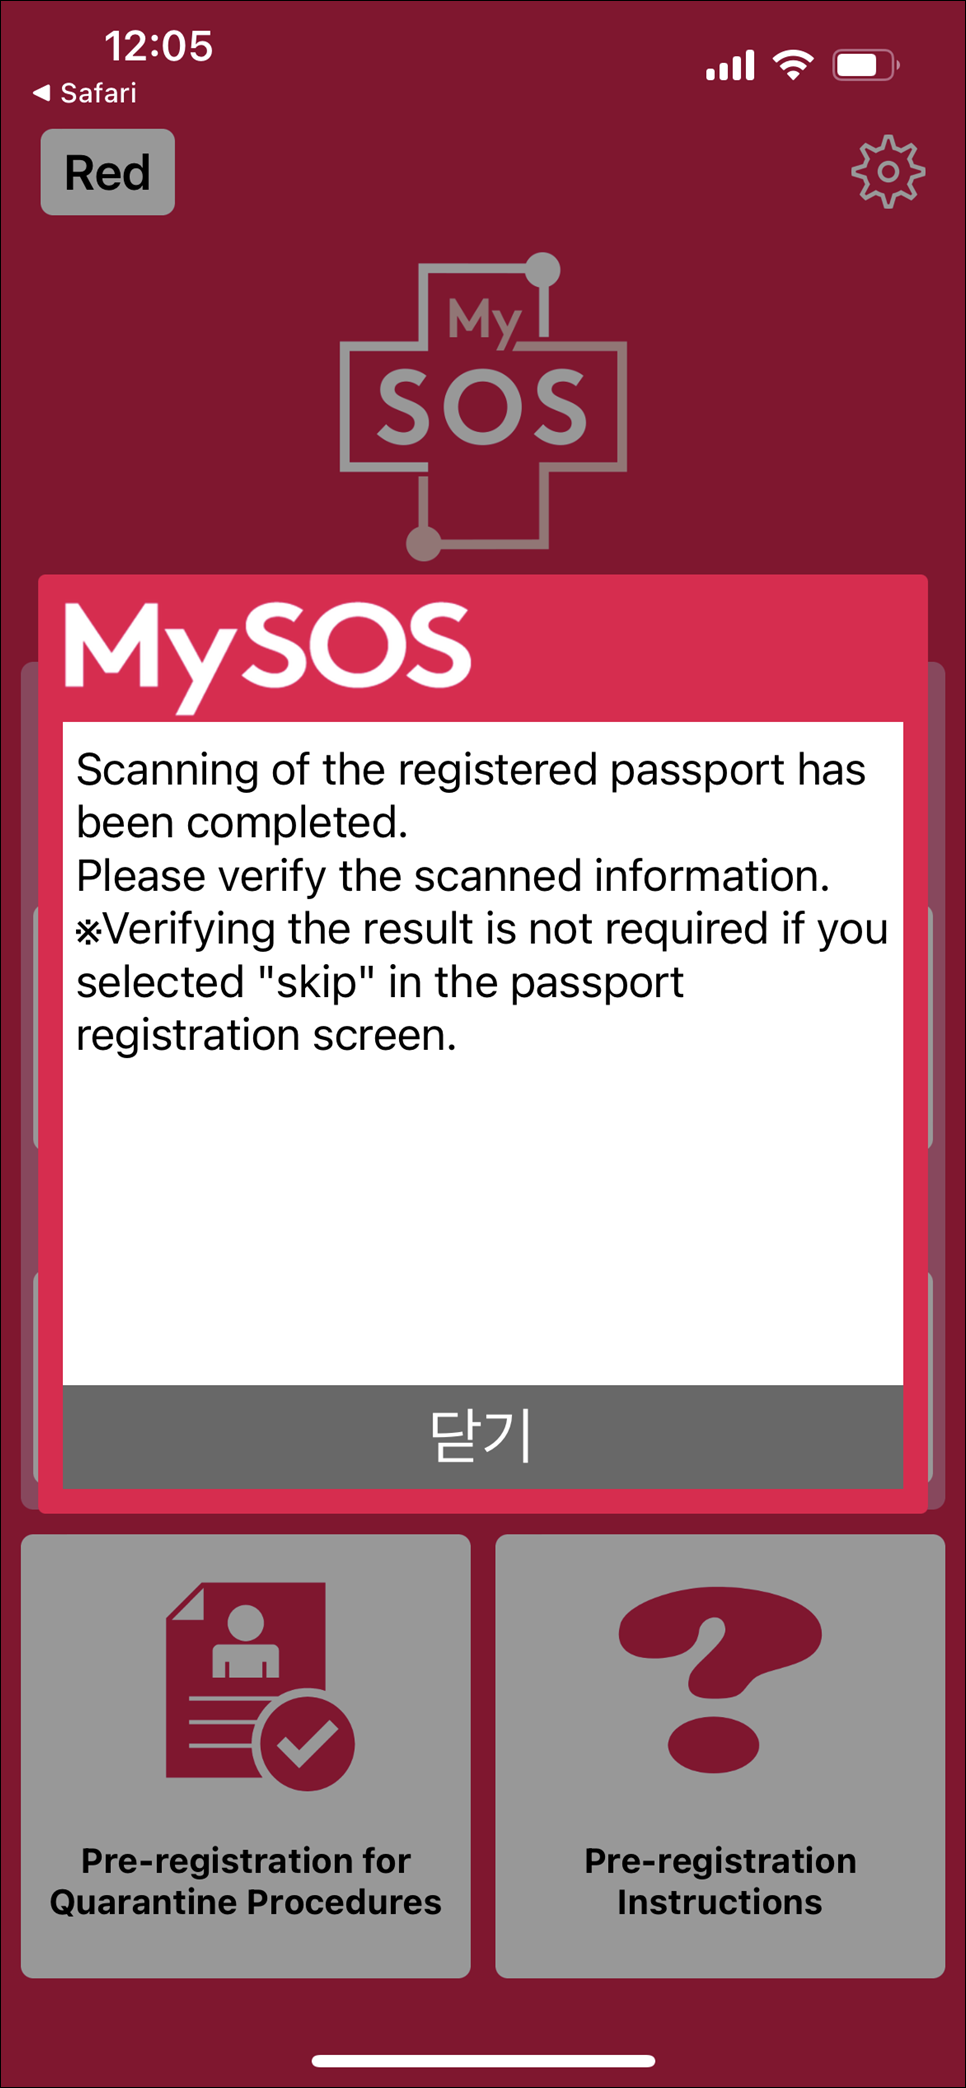 일본여행 : 일본 입국 서류 및 절차 MySOS 포함